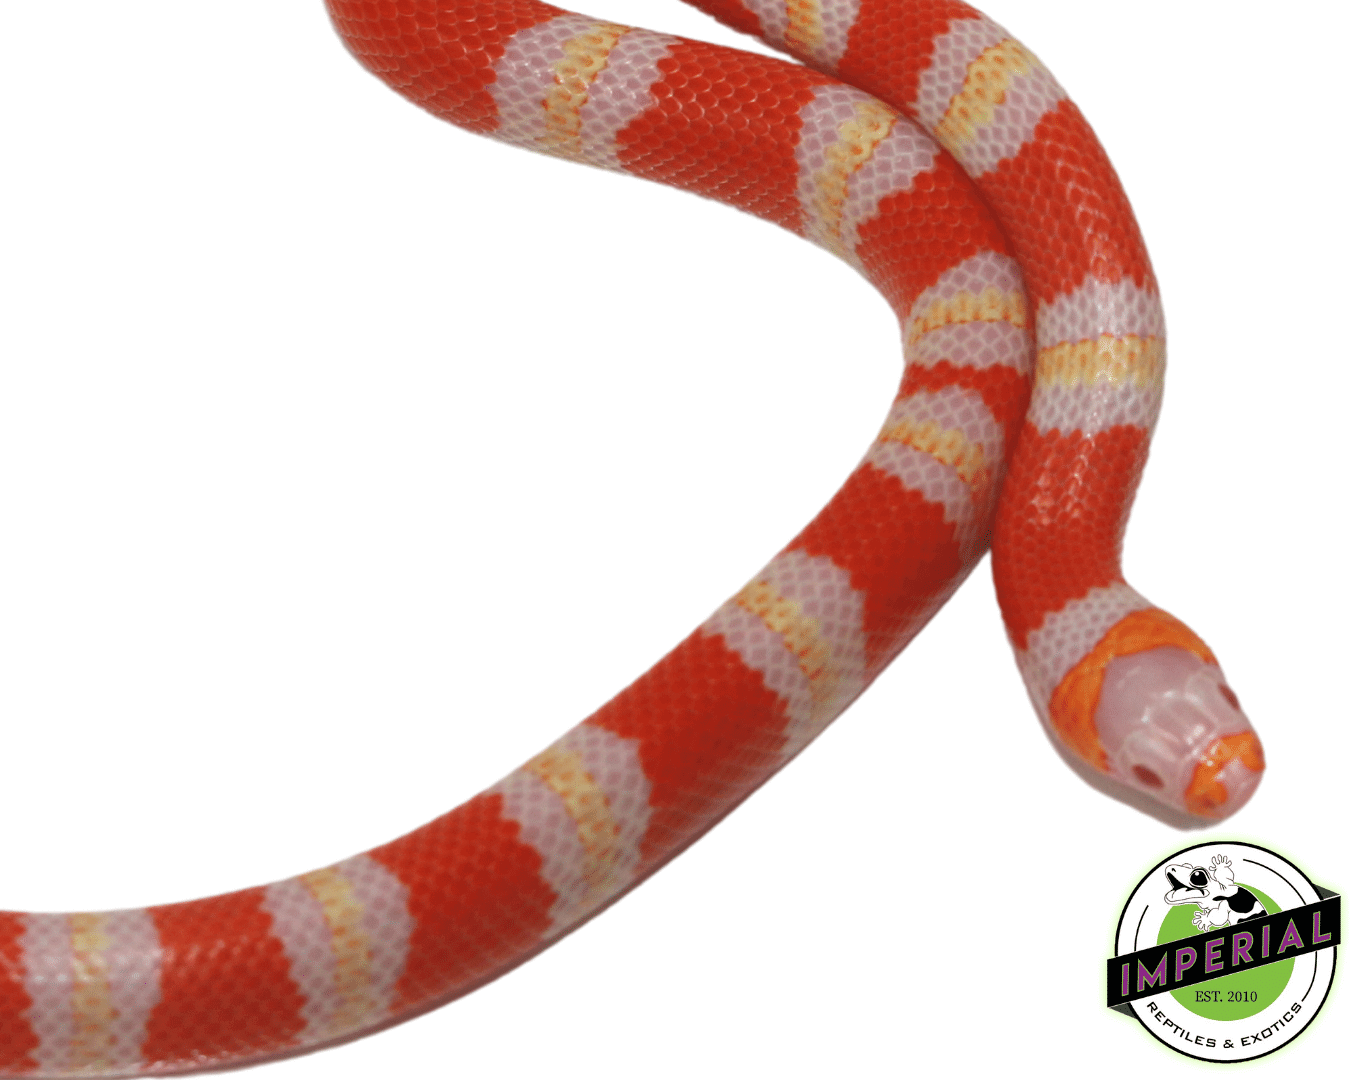 albino tri-color honduran milk snake for sale, buy reptiles online